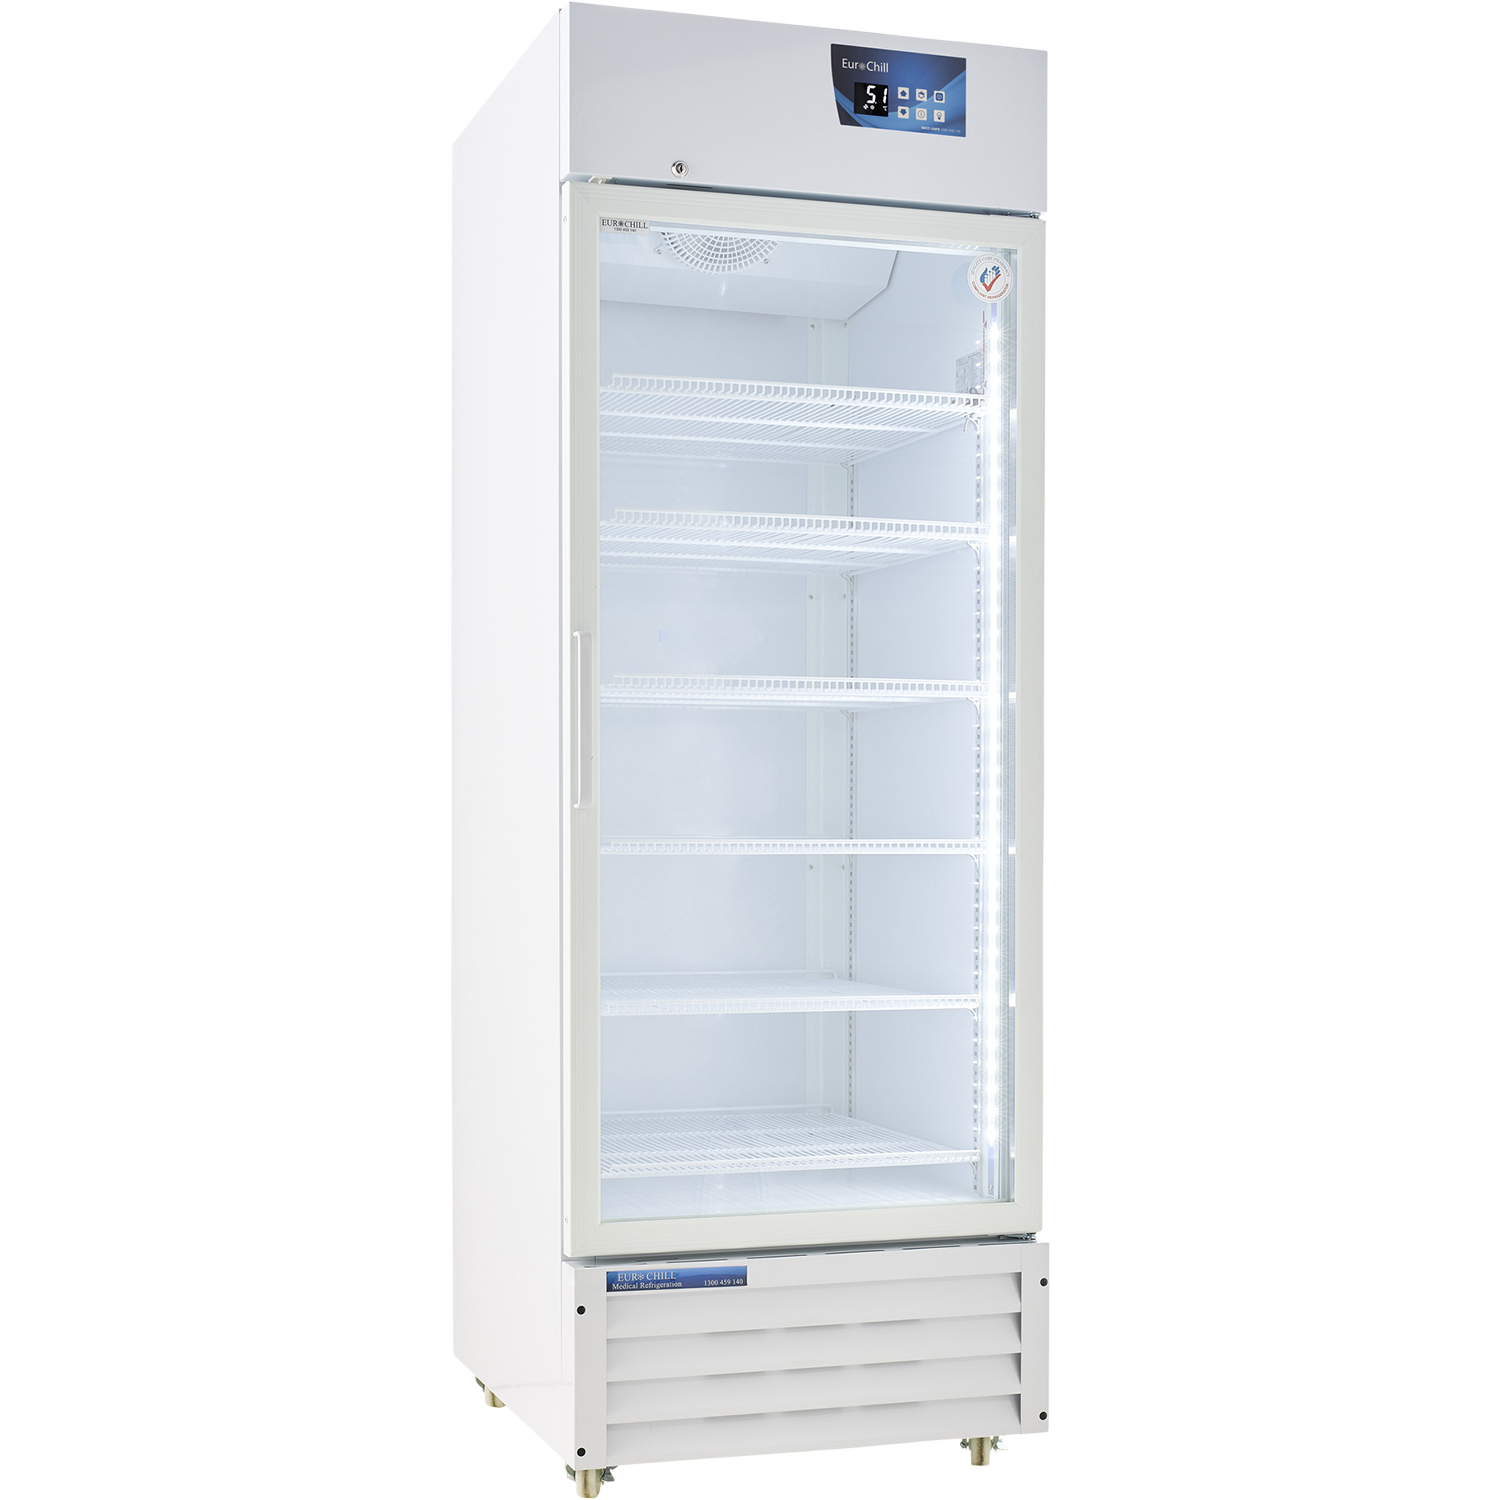 Vacc-Safe 600 Premium Vaccine Refrigerator